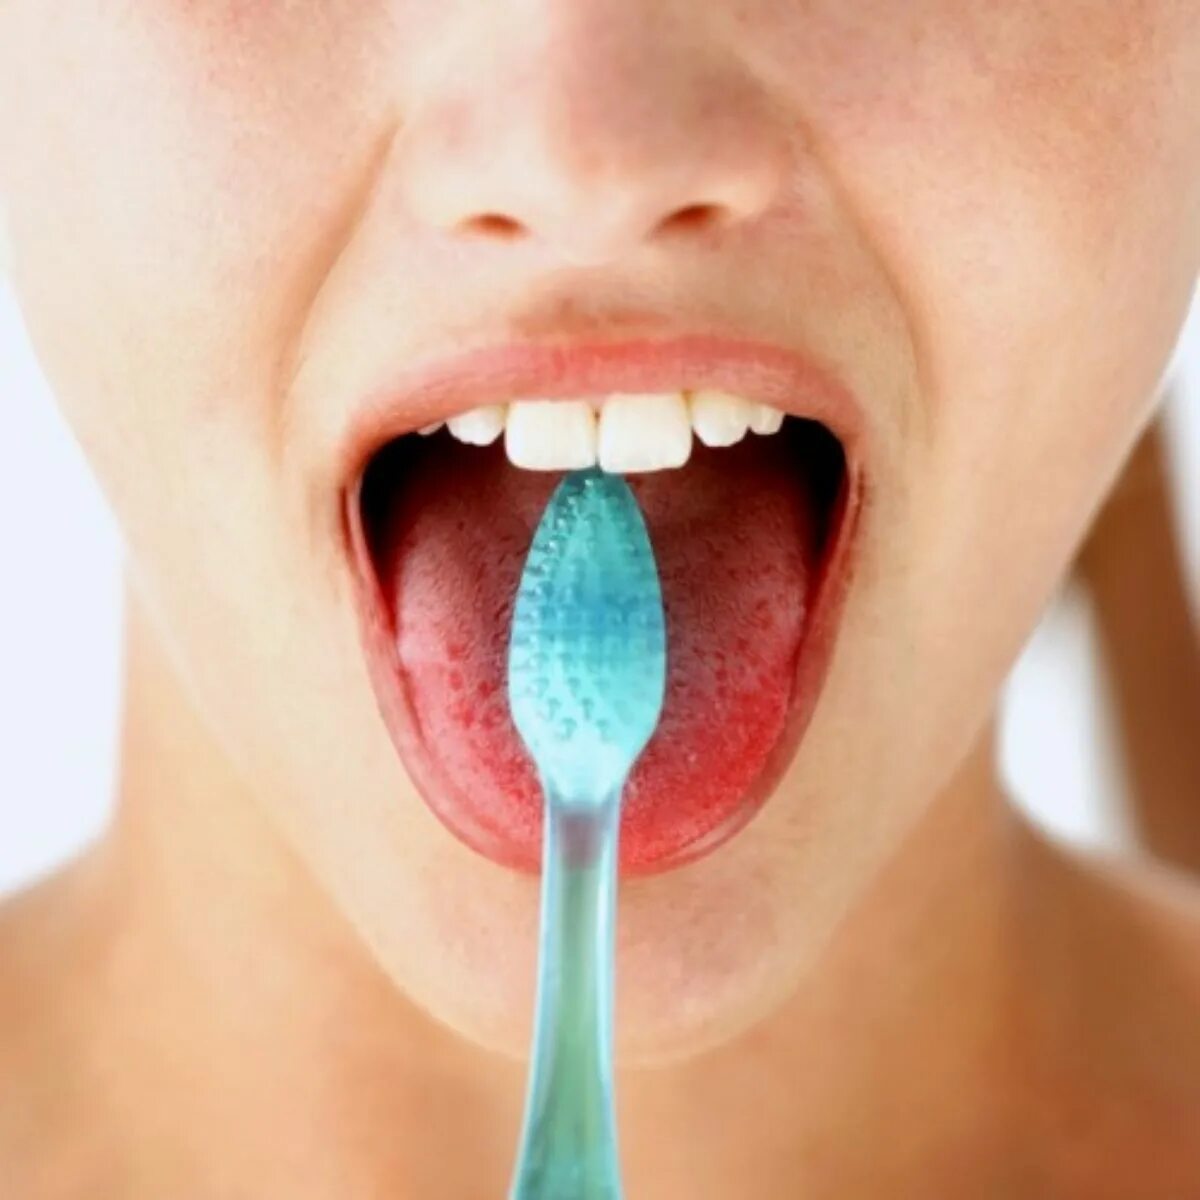 Полости рта народными средствами. Гигиена полости рта язык. Чистка языка зубной щеткой.